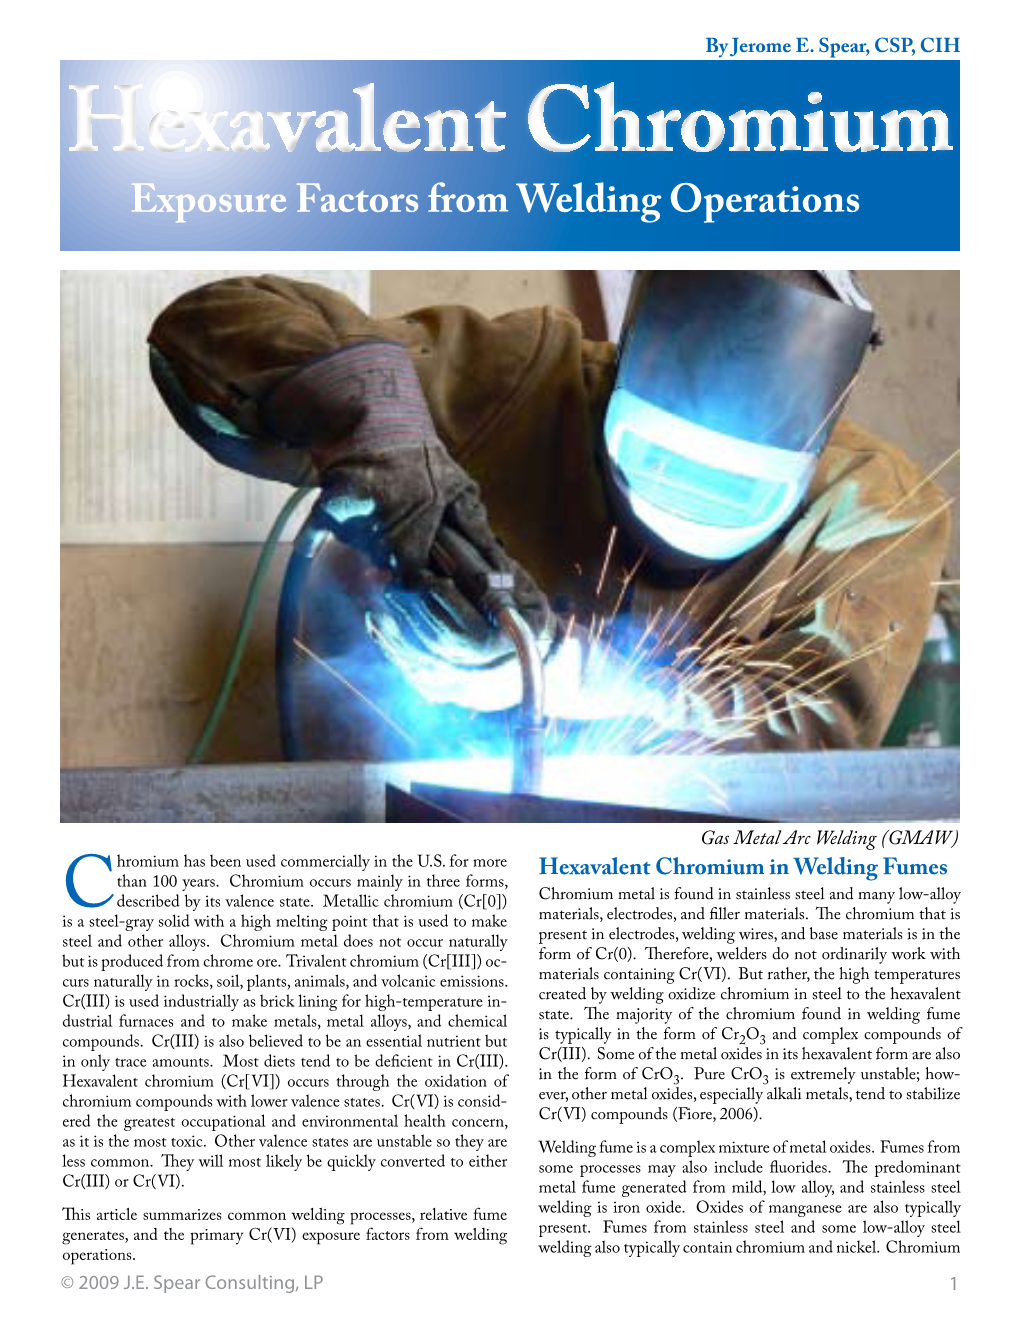 Hexavalent Chromium Exposure Factors from Welding Operations